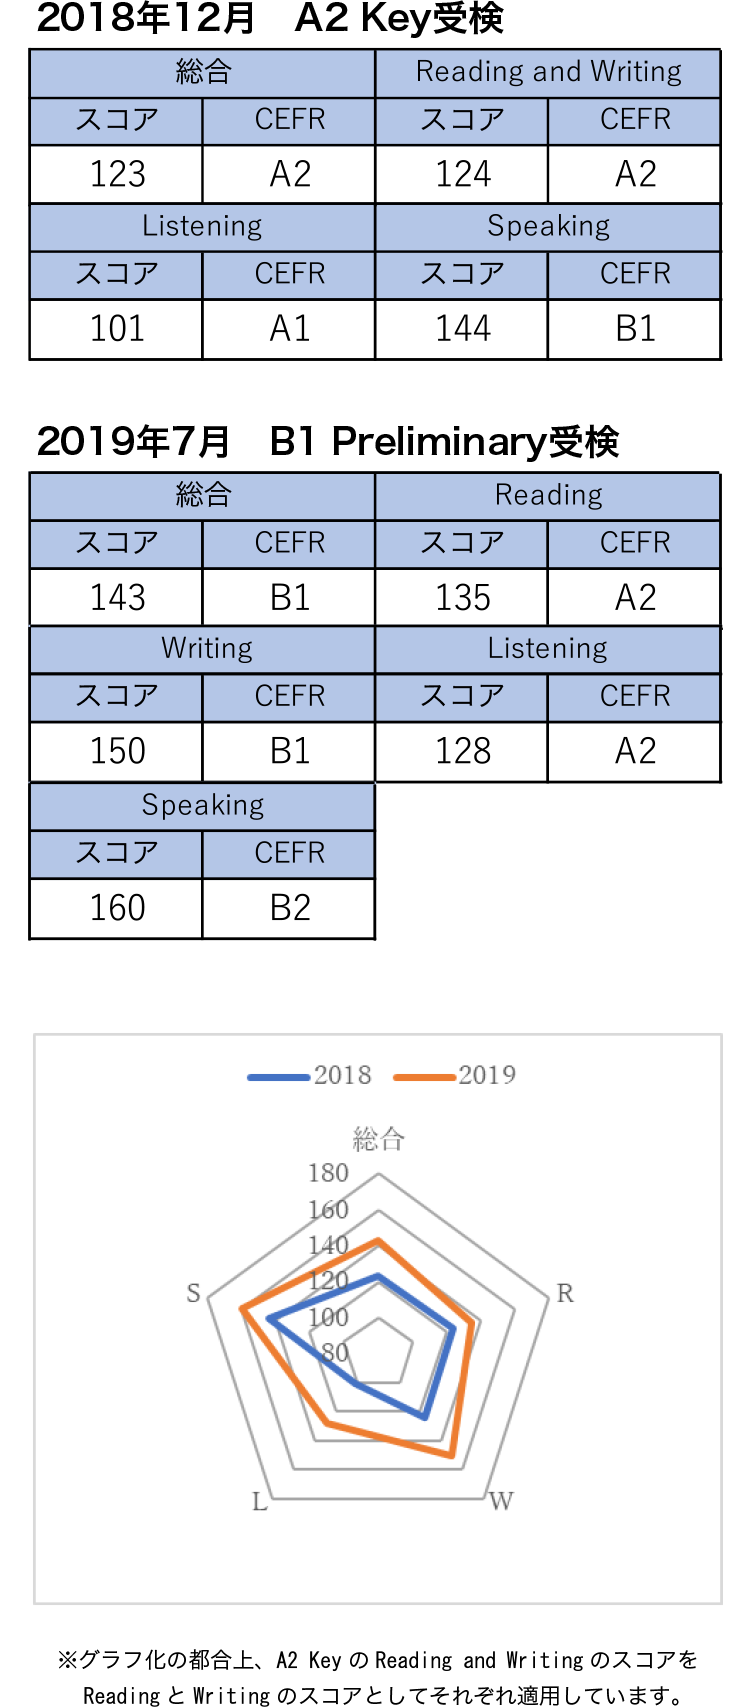 ケンブリッジ英語検定 2018年12月 A2 Key受検 2019年7月 B1 Preliminary受検 成績